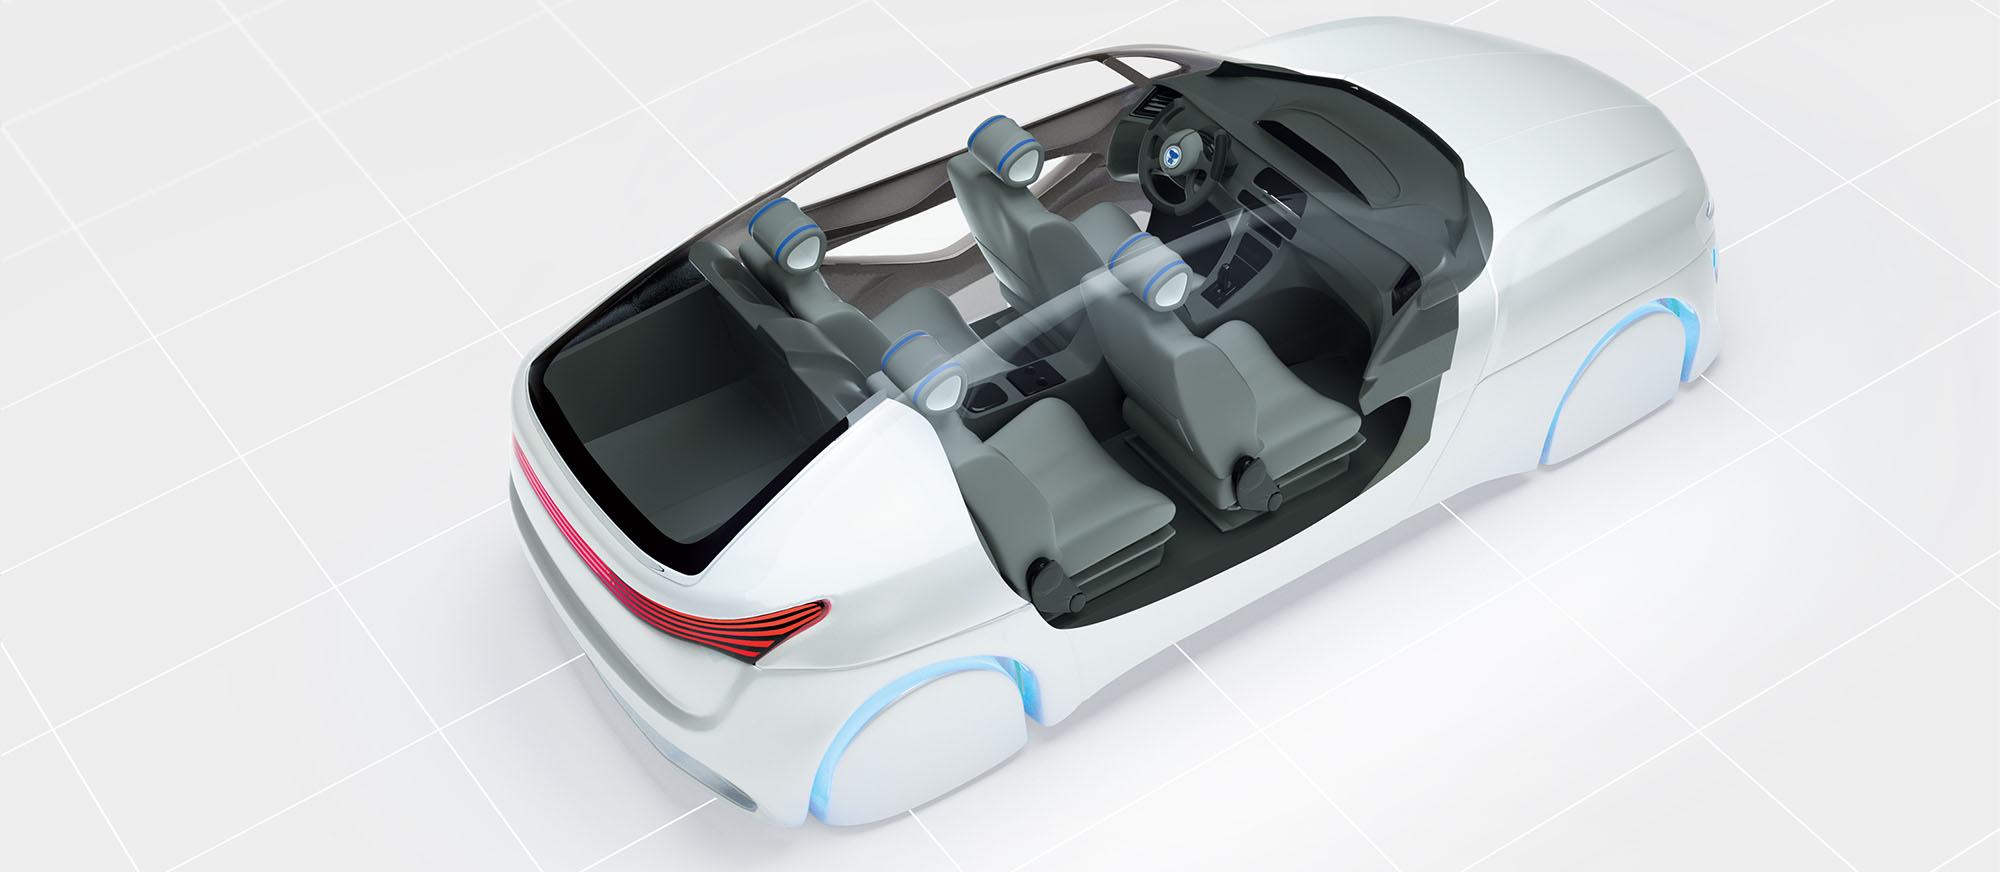 3D-Animation eines weißen Autos und Fahrzeuginnenraum, leicht futuristische Darstellung